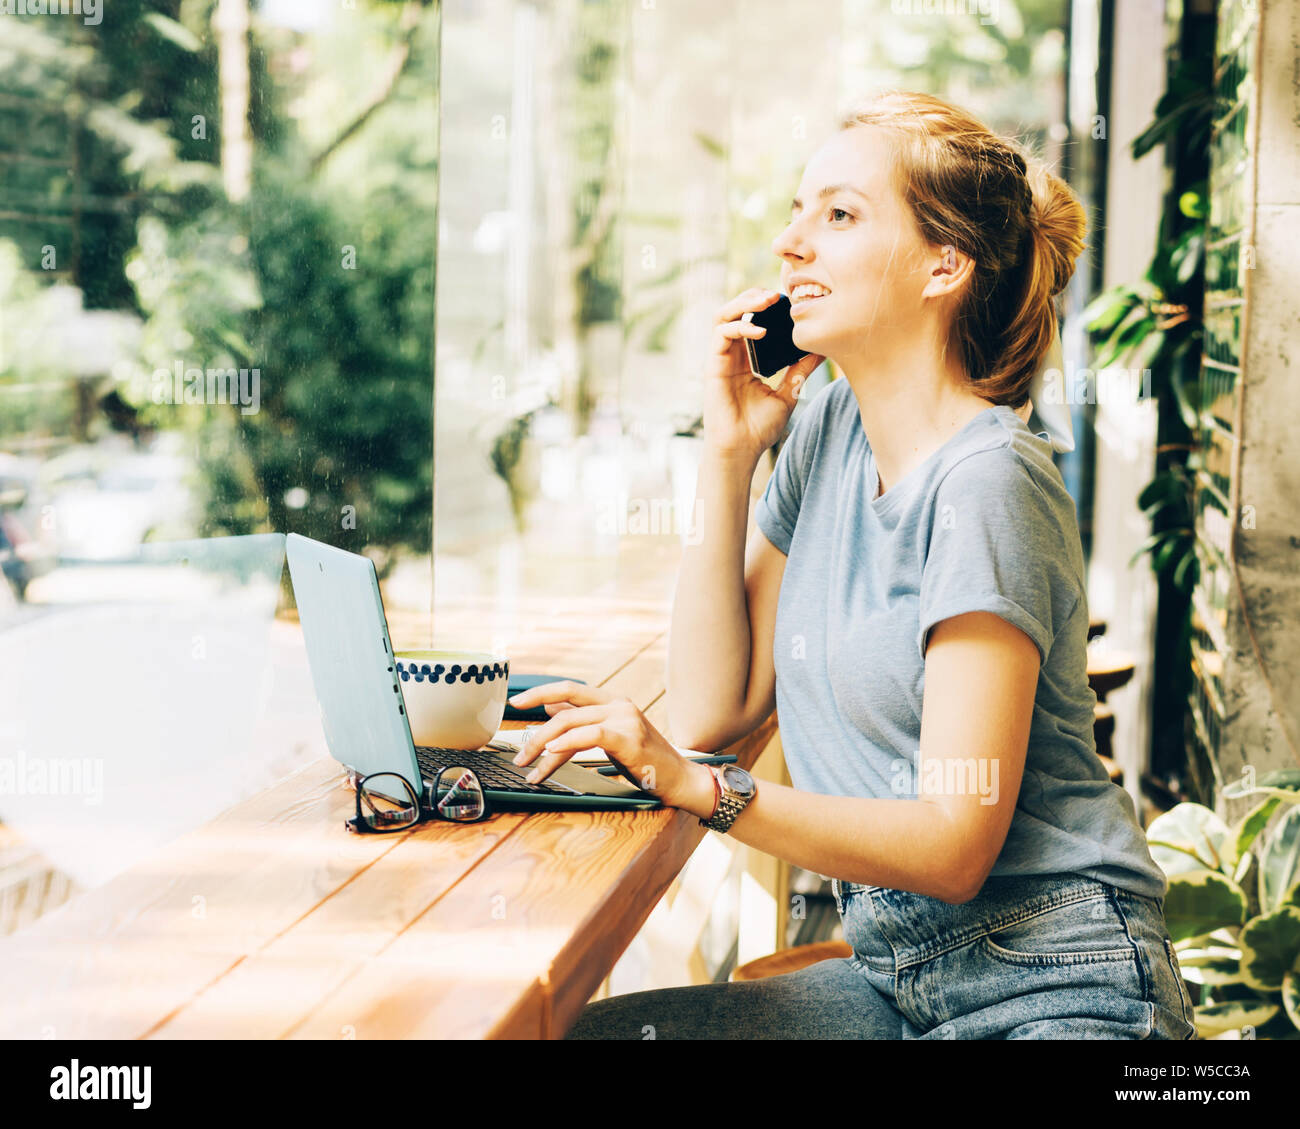 Business moderne zuversichtlich Mädchen, am Telefon zu sprechen, in einem Cafe an einem Tisch. Technische Geräte für die moderne Jugend Kommunikation. Stockfoto